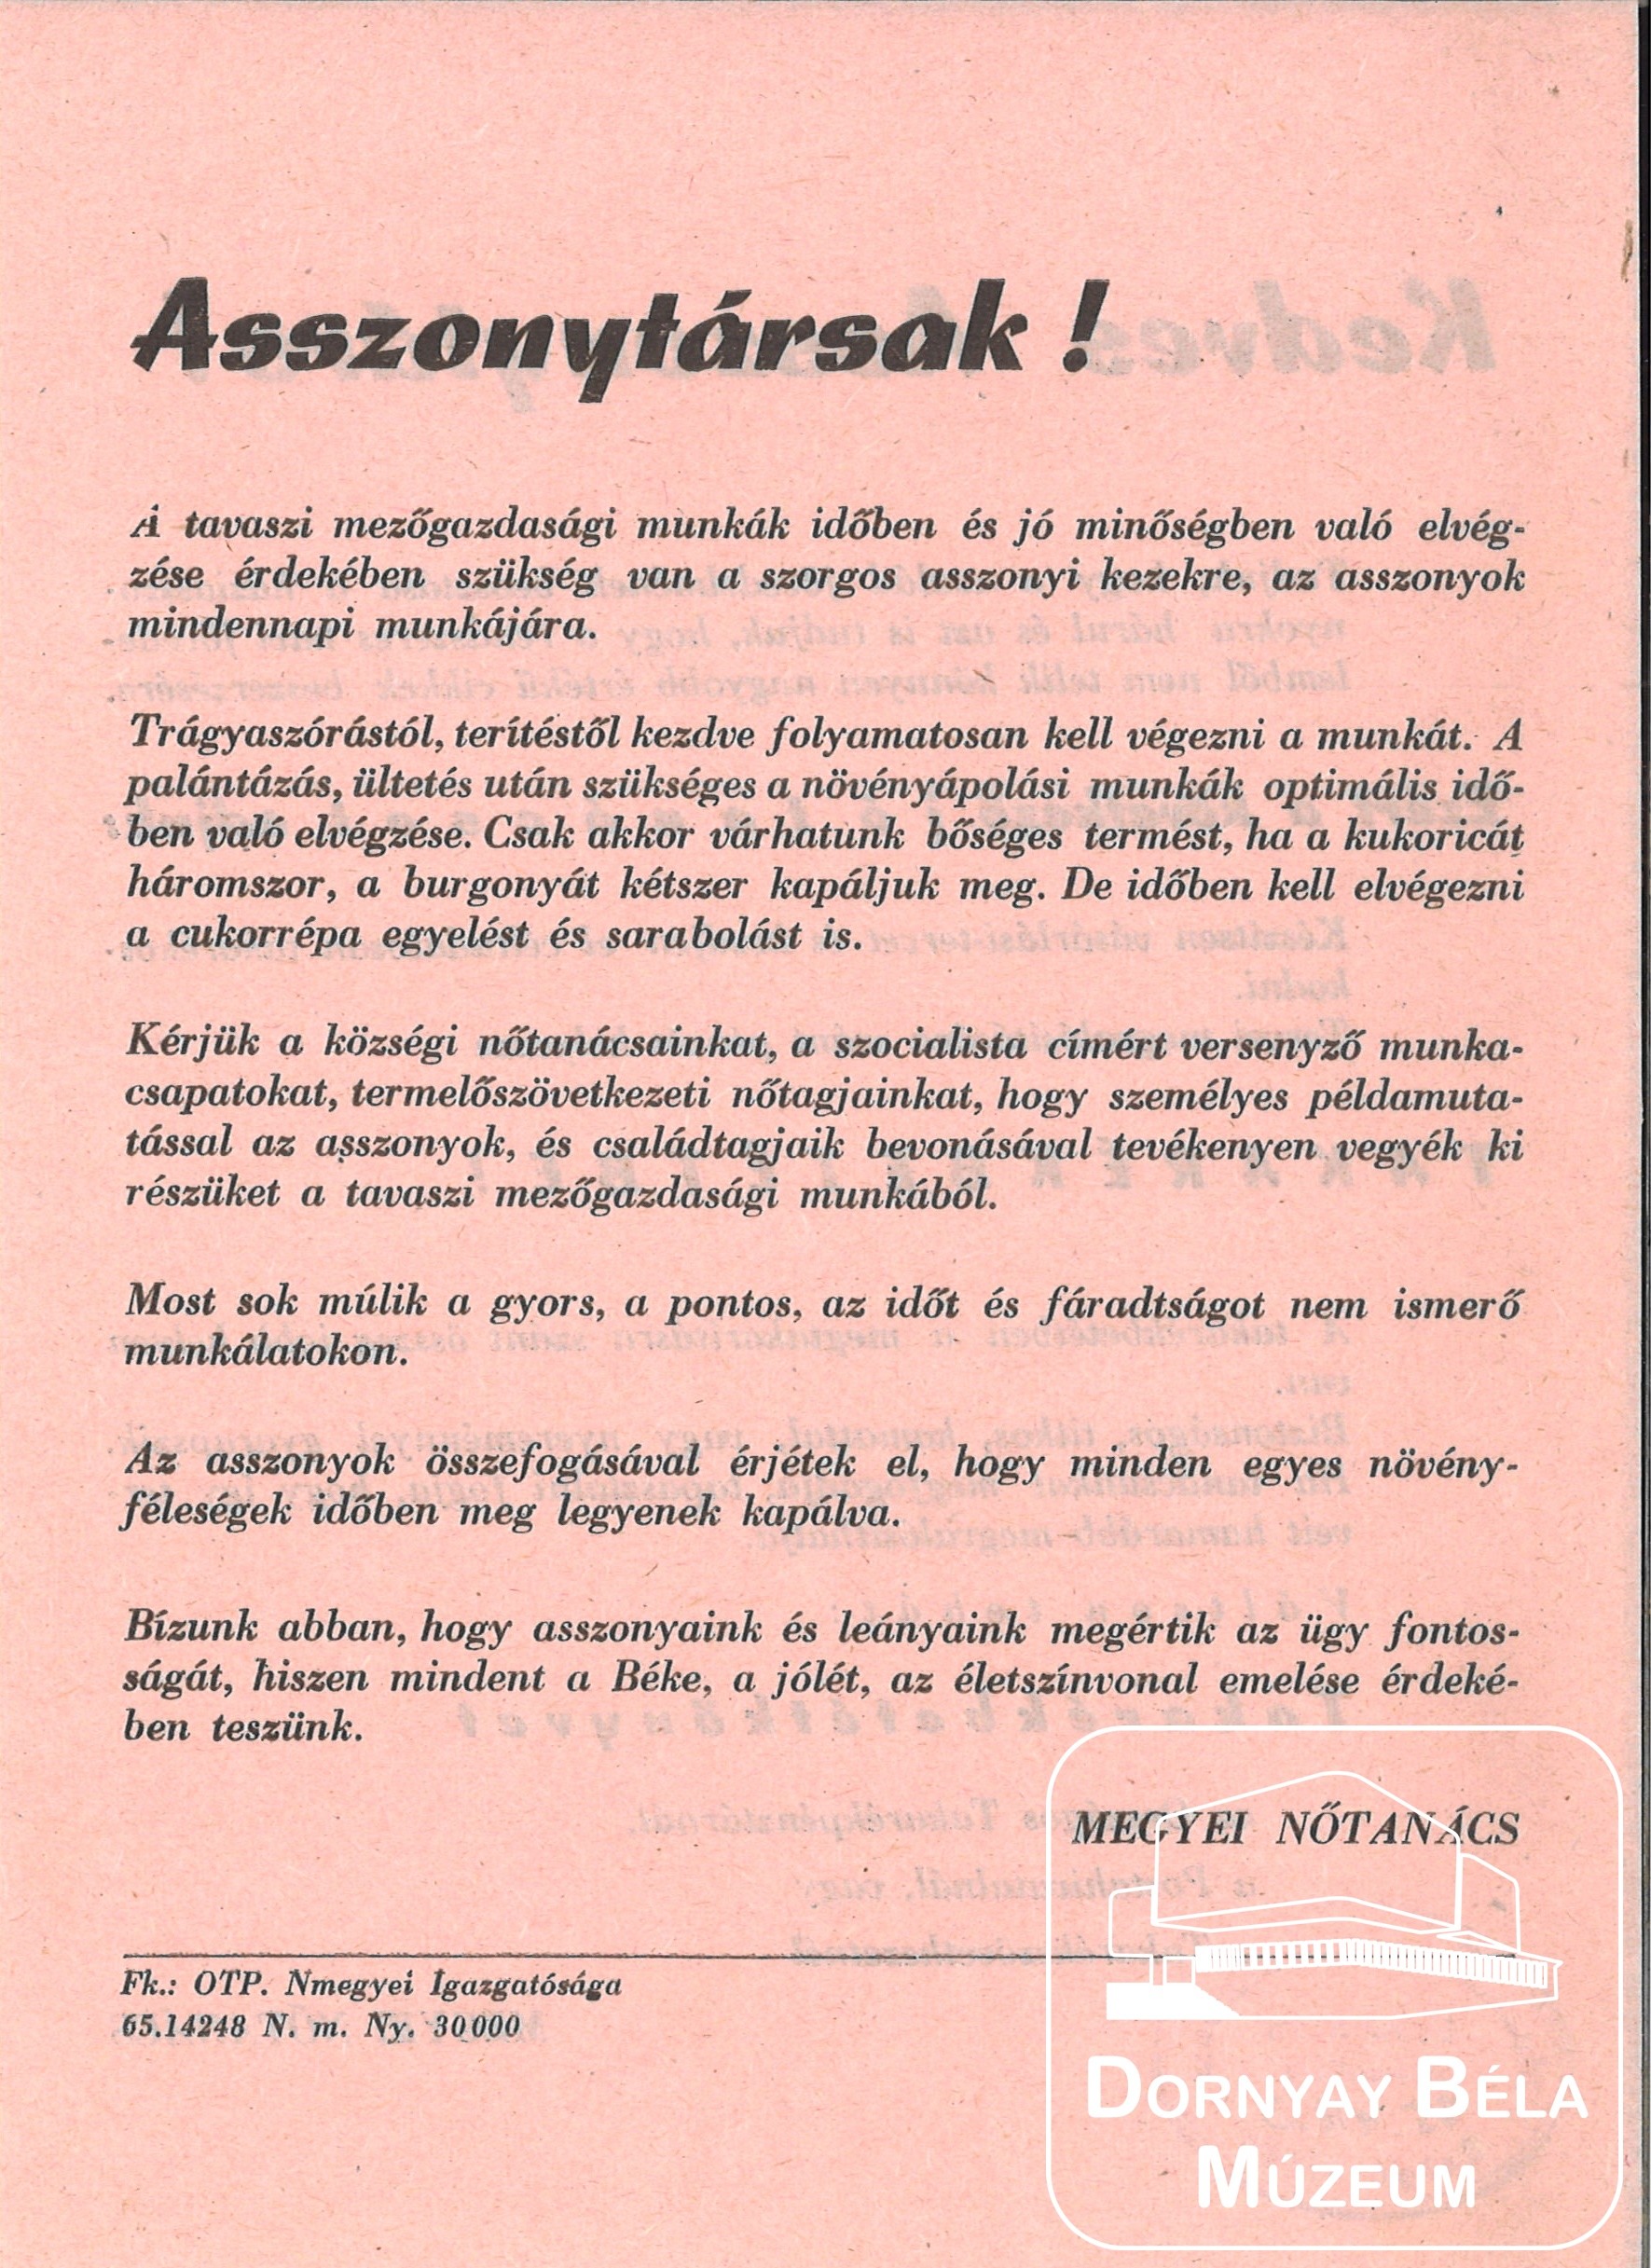 Megyei Nőtincs felhívása (tavaszi mg-i munka) (Dornyay Béla Múzeum, Salgótarján CC BY-NC-SA)